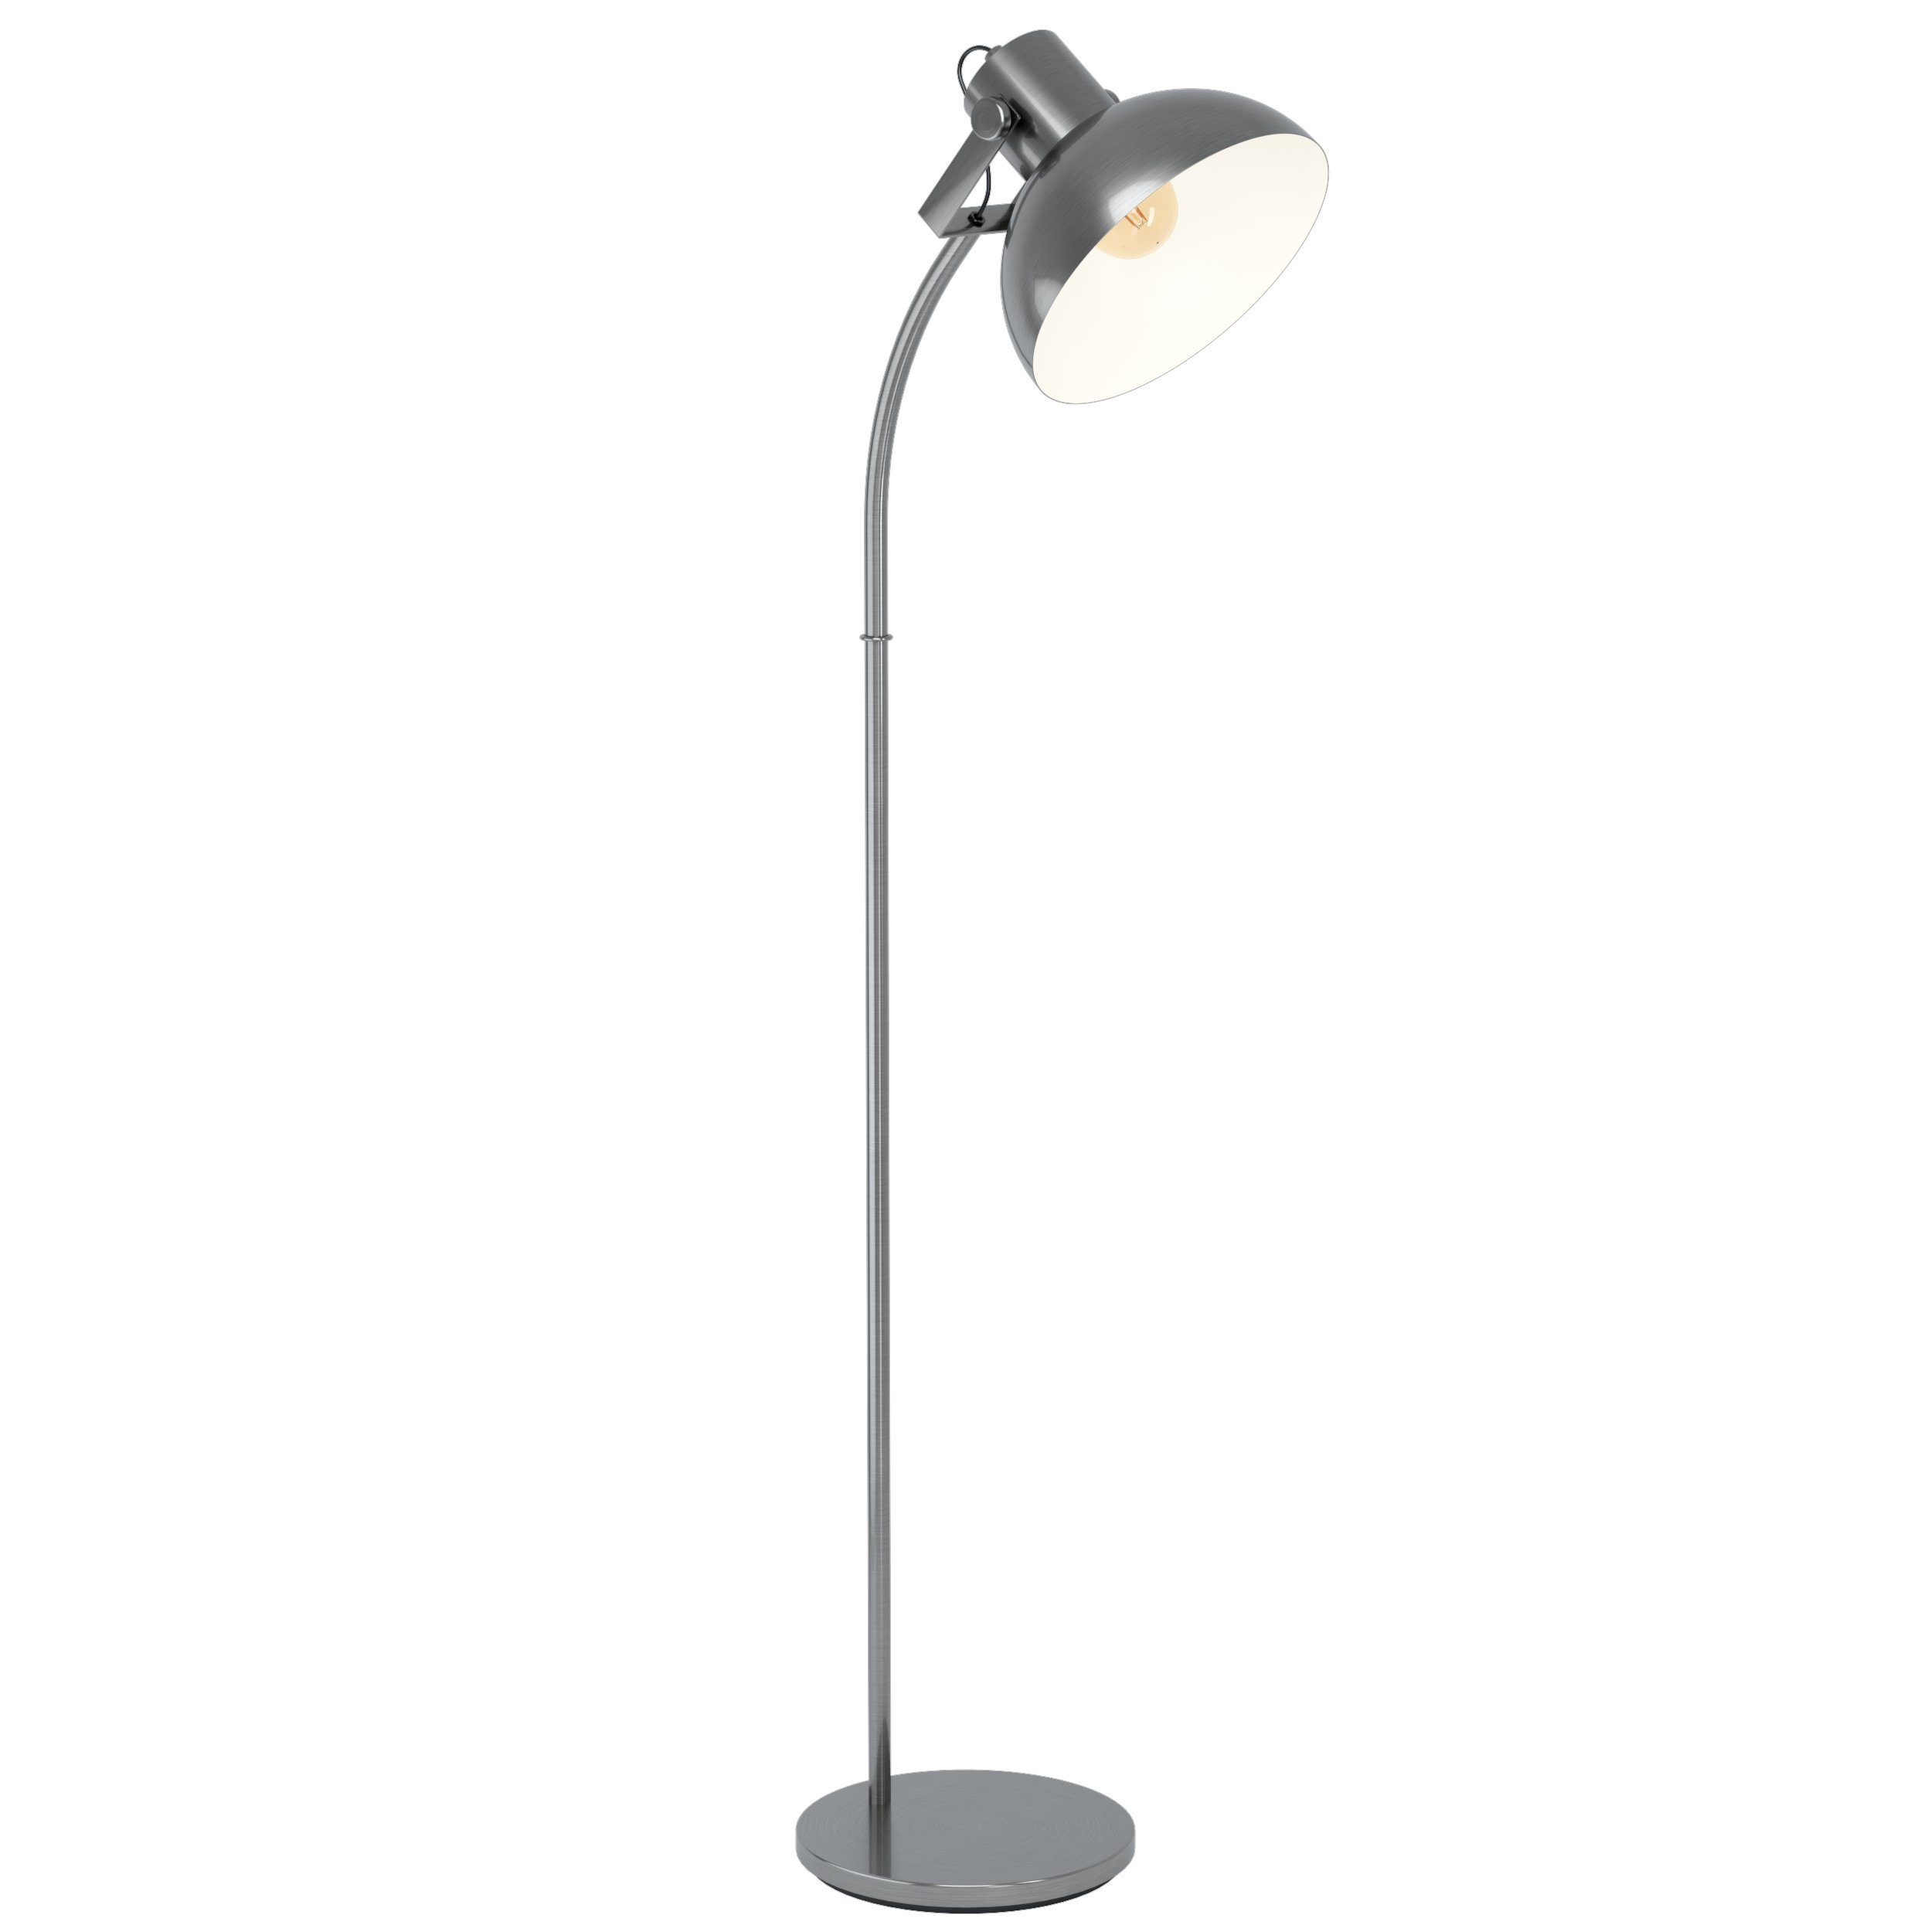 matt, EGLO Vintage Standlampe, 1, Lubenham Trittschalter Nickel Stehleuchte, exklusive, E27, LED Leuchtmittel Stehlampe